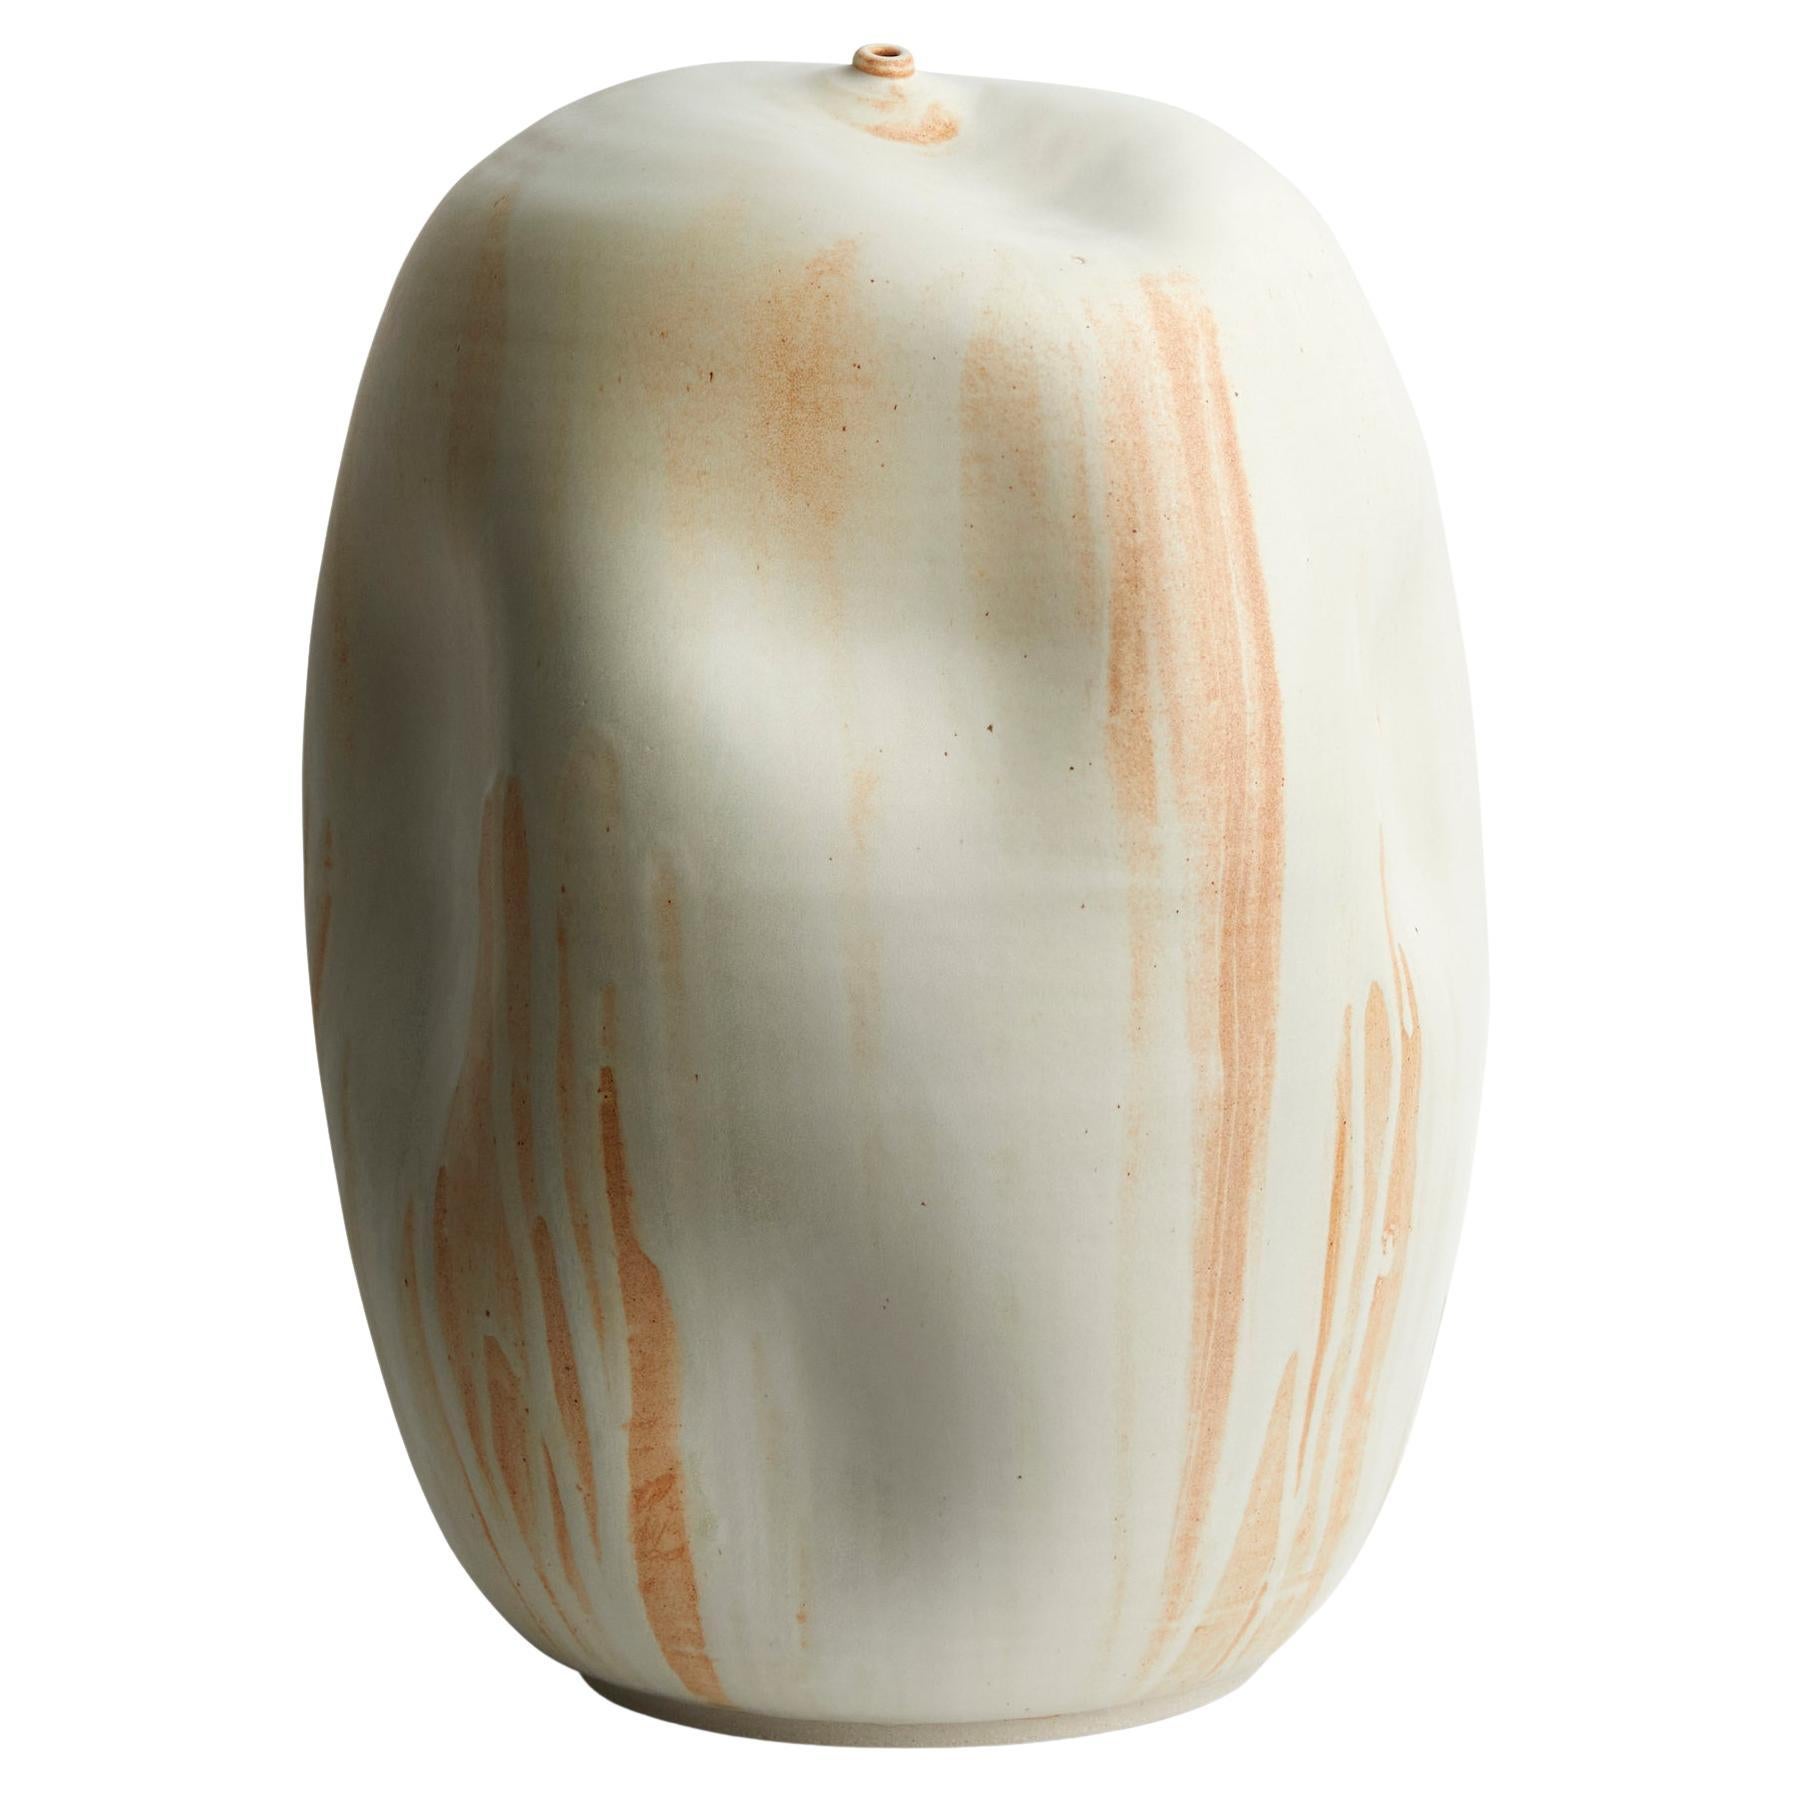 Skoby Joe Tall Ceramic Vase Wabi Sabi/ Mid-Century Modern